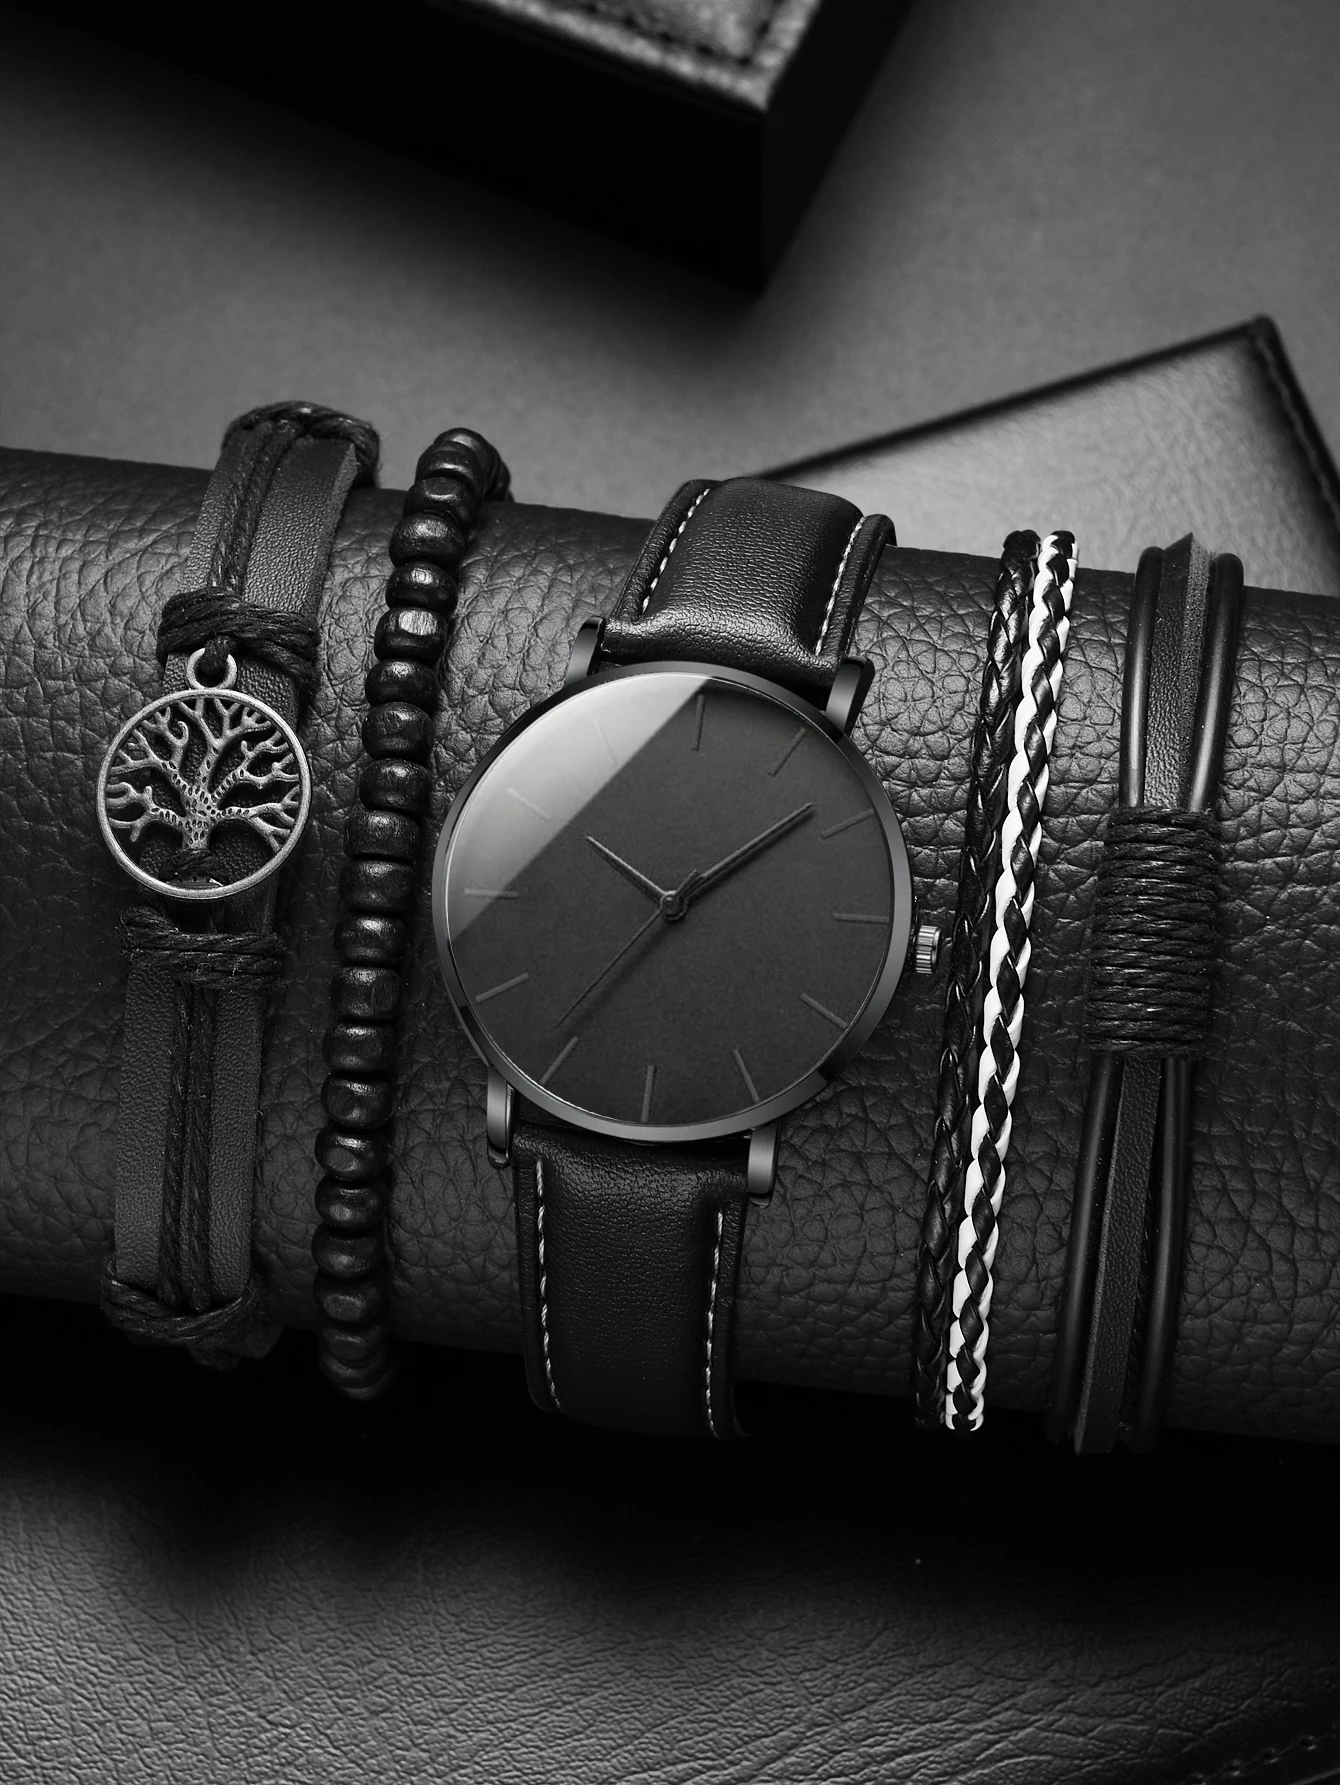 Nova Homens Relógio De Luxo Pulseira Conjunto De Negócios De Moda Do Preto De Couro Relógios De Pulso De Quartzo Para Homens Gift Set Relógio Masculino